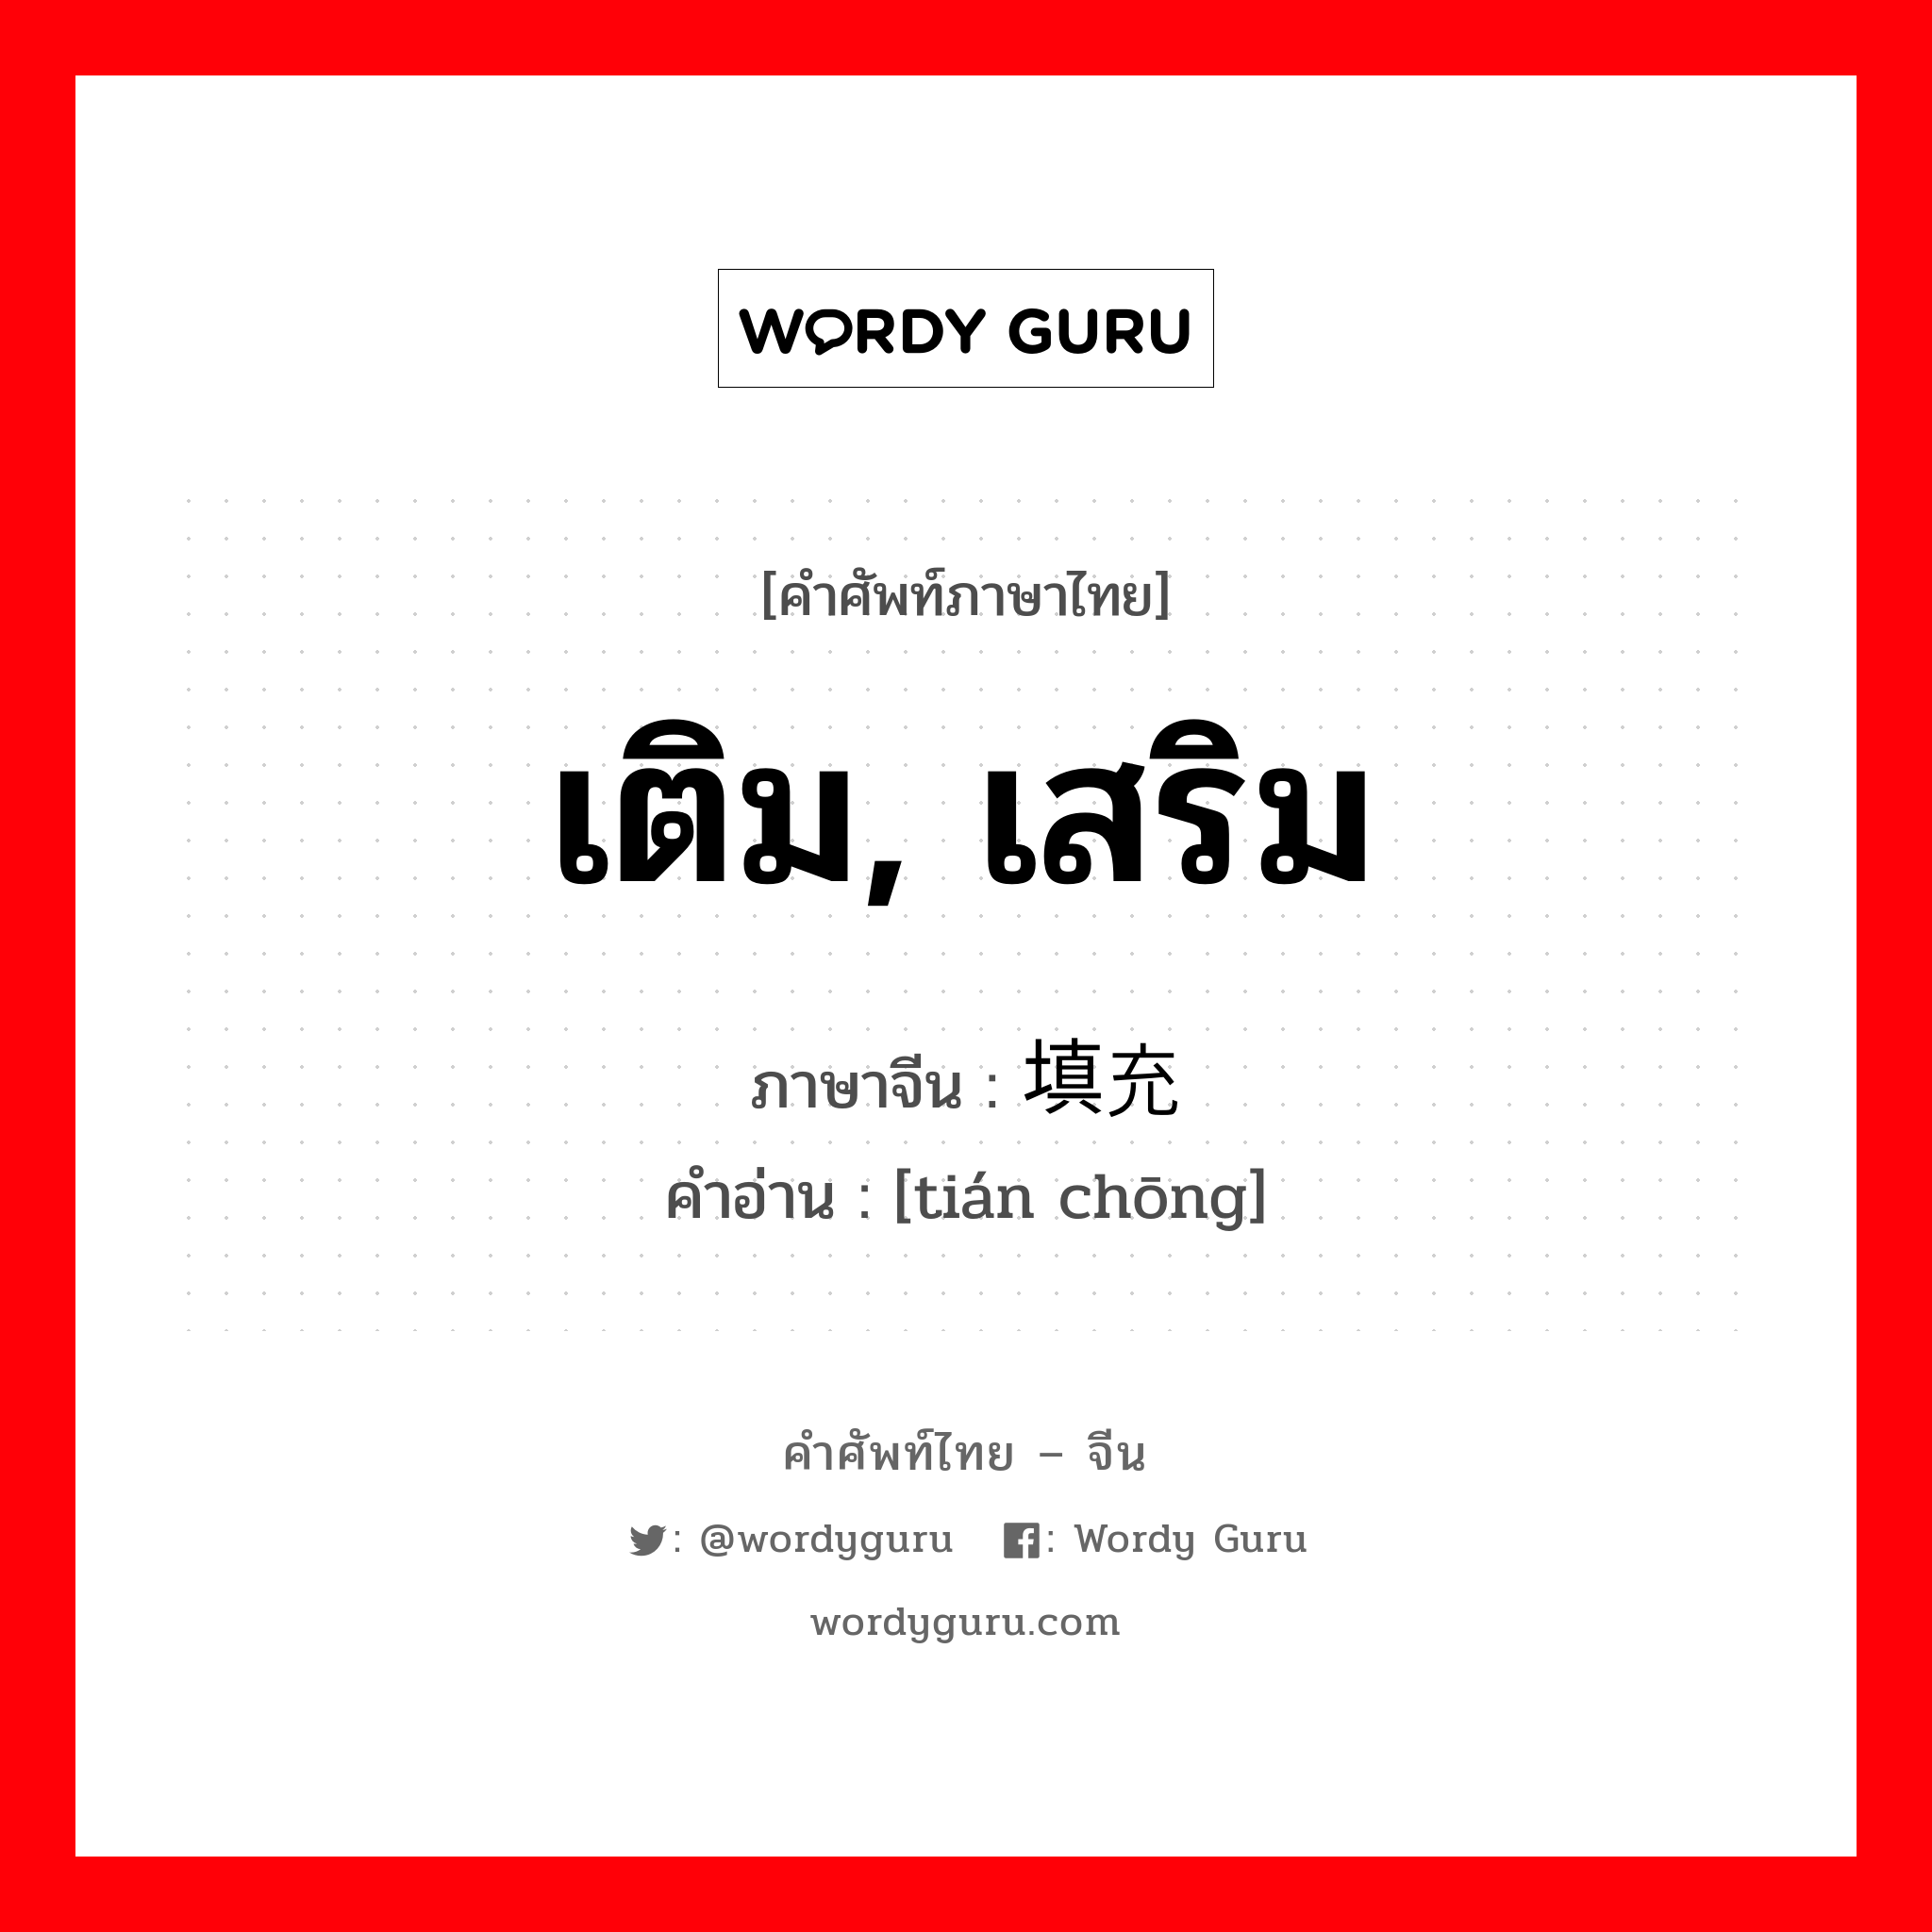 เติม, เสริม ภาษาจีนคืออะไร, คำศัพท์ภาษาไทย - จีน เติม, เสริม ภาษาจีน 填充 คำอ่าน [tián chōng]